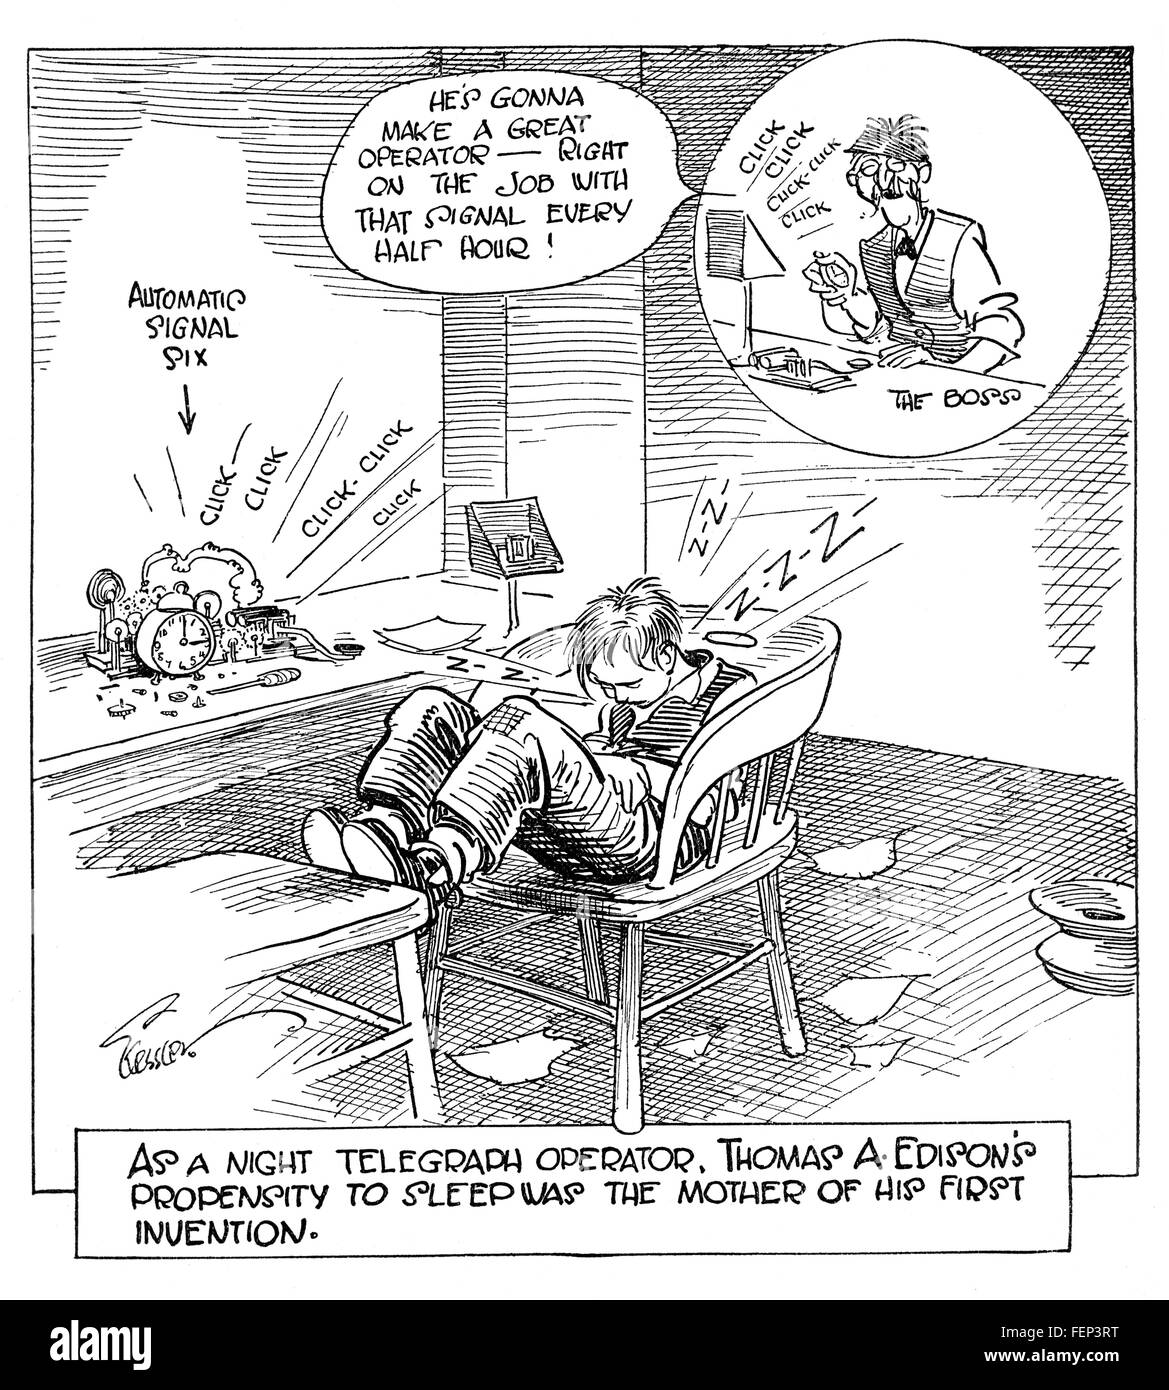 Caricature montrant les jeunes Thomas Edison sleeping while un réveil active automatiquement le telegraph key pour les signaux d'une demi-heure Banque D'Images